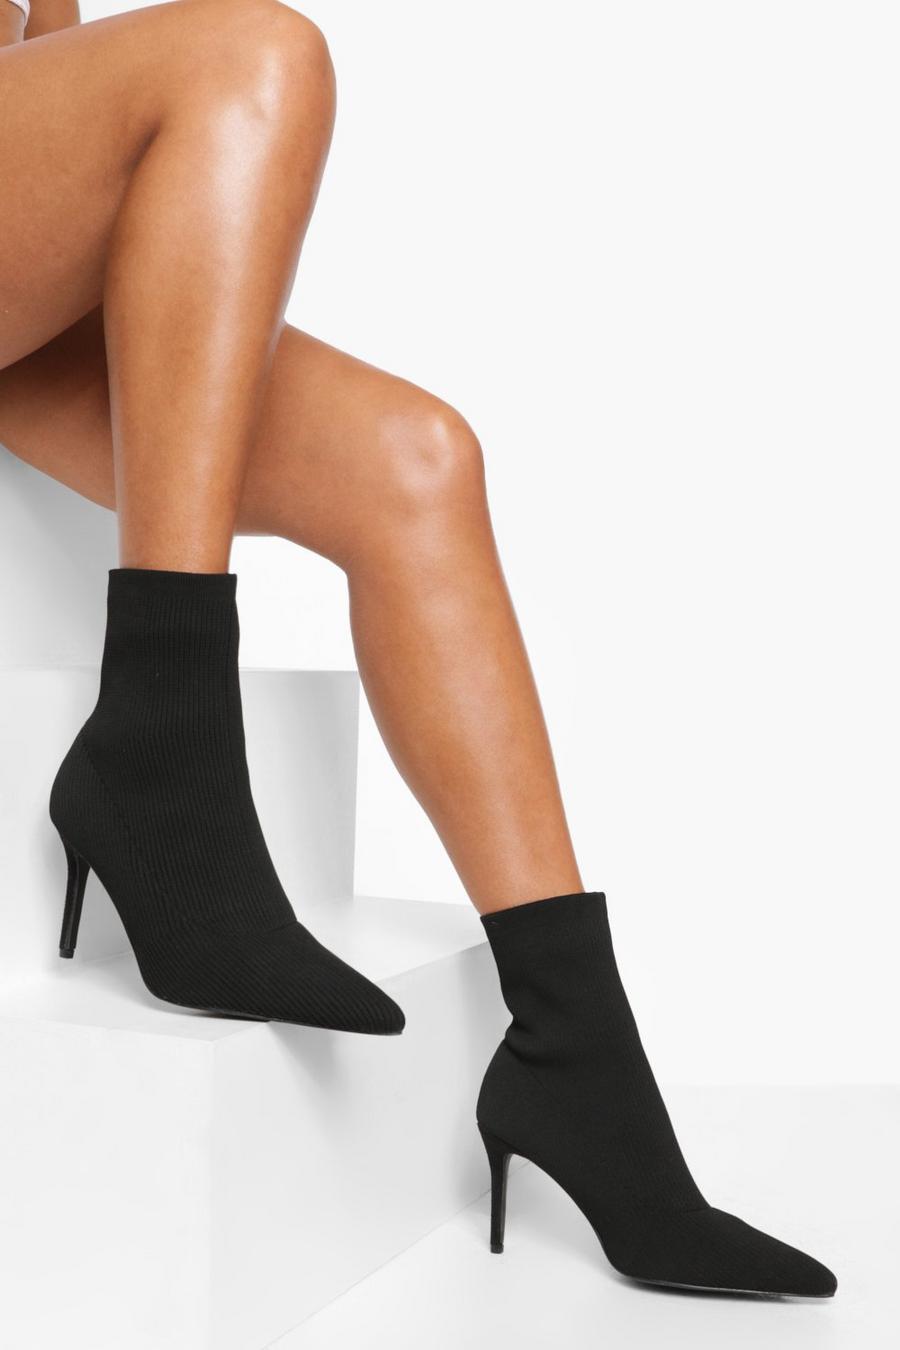 Botas estilo calcetín de holgura ancha de tela con tacón de aguja, Black negro